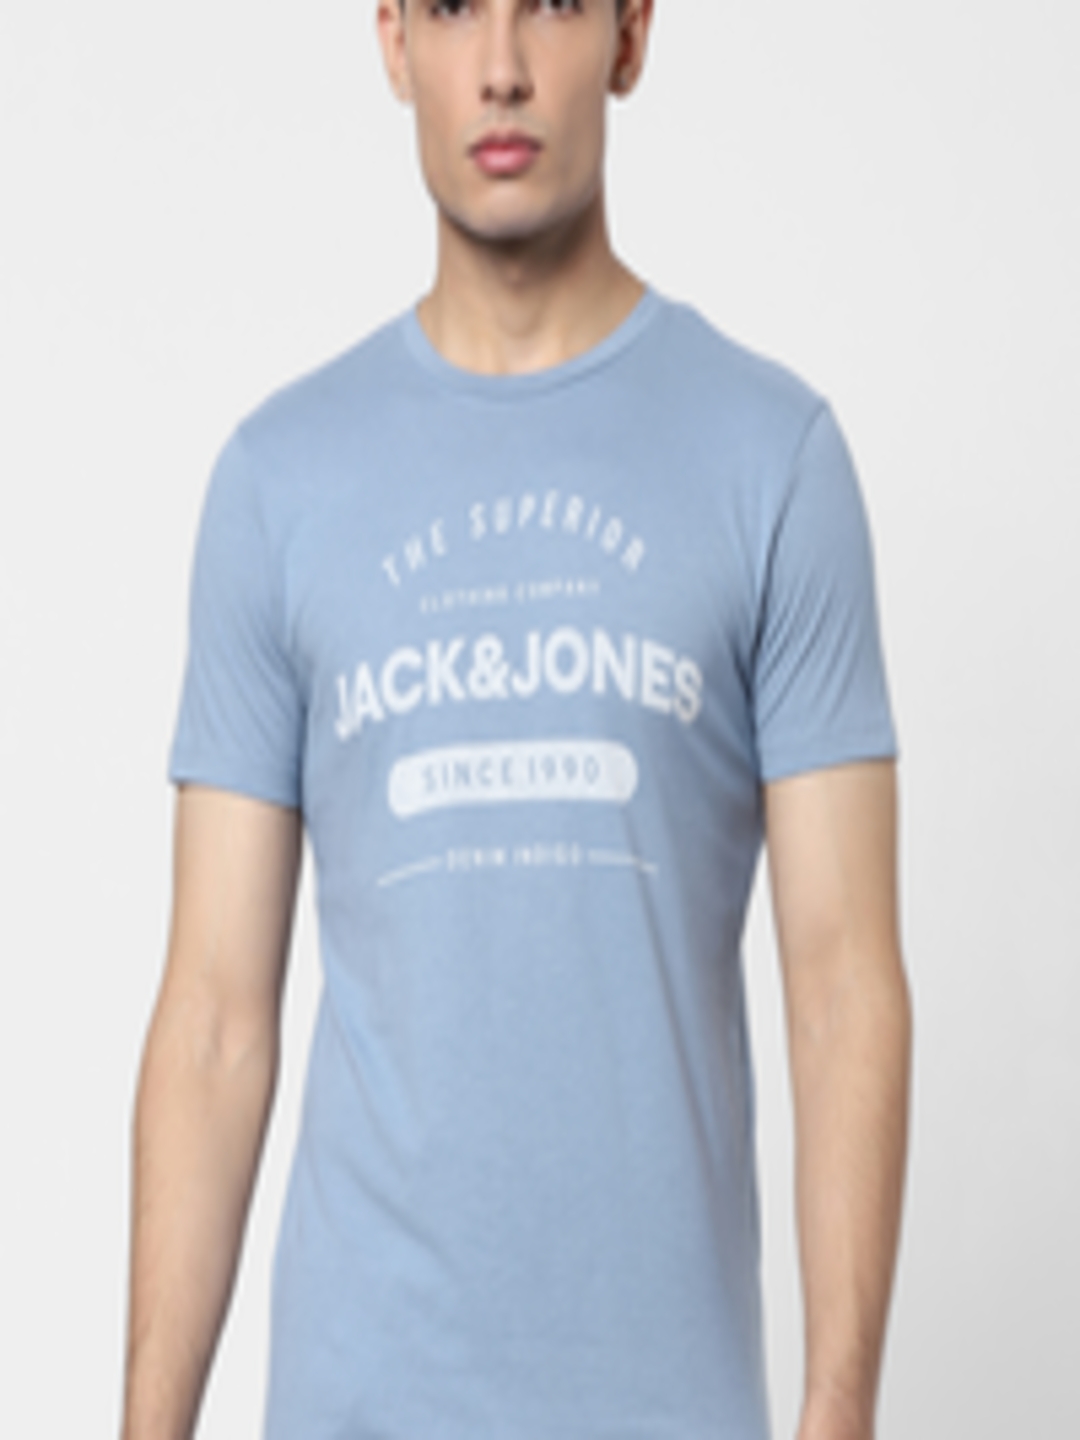 Buy Jack & Jones Men Blue & White Printed Slim Fit T Shirt - Tshirts ...